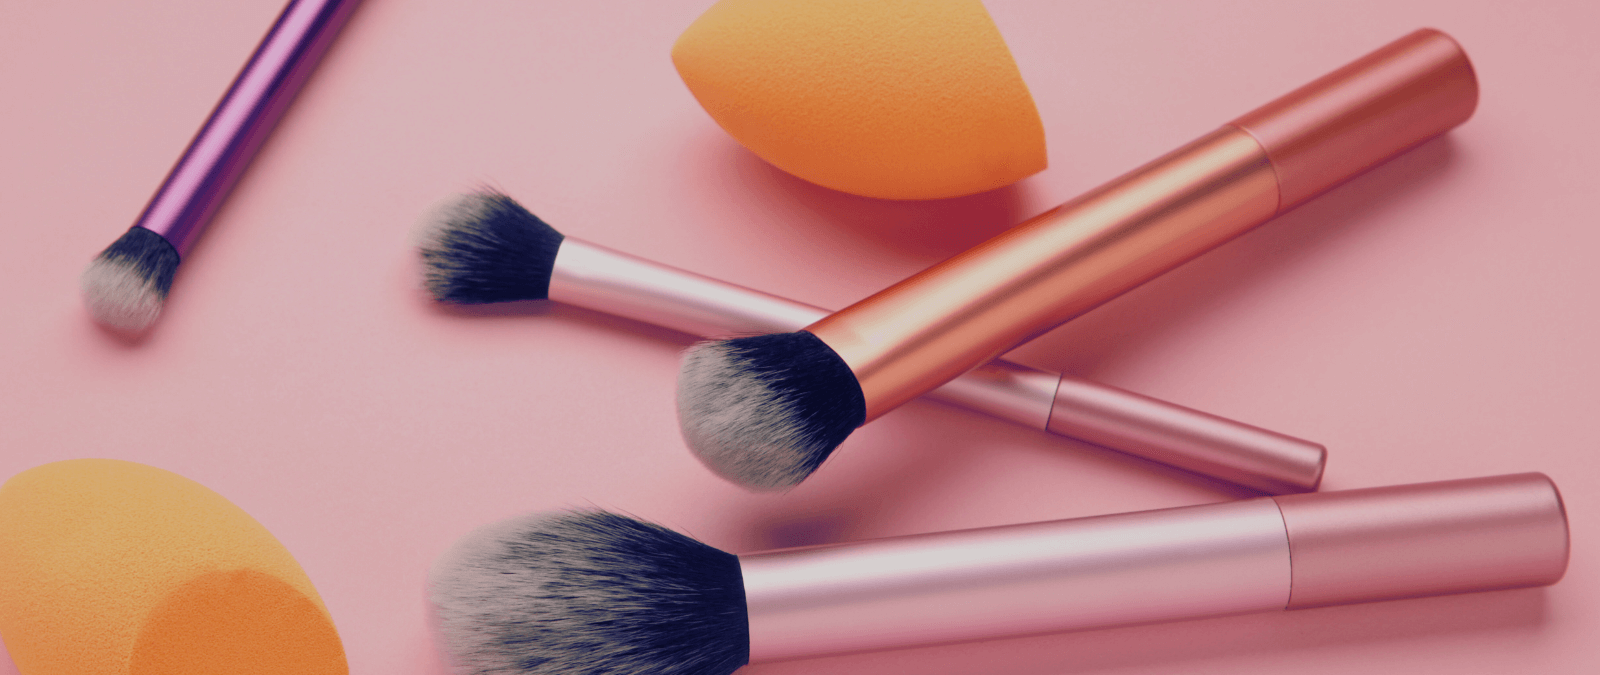 Higiene en brochas y esponjas de maquillaje: descuidarlas puede favorecer el crecimiento de hongos y problemas en la piel